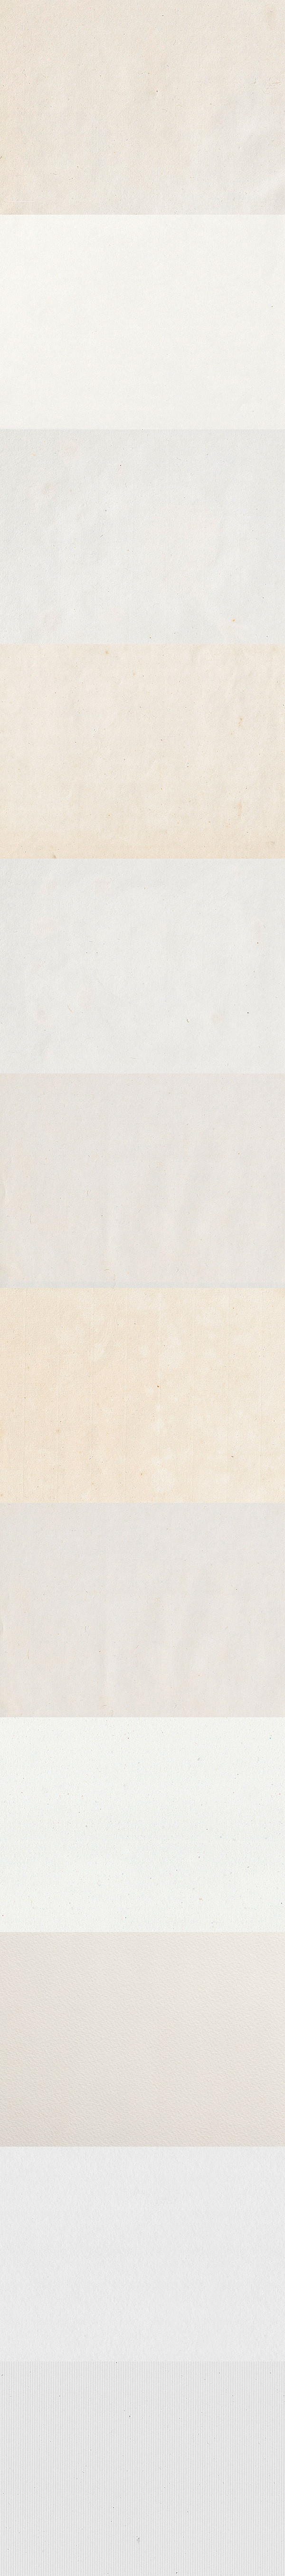 12-paper-textures-600